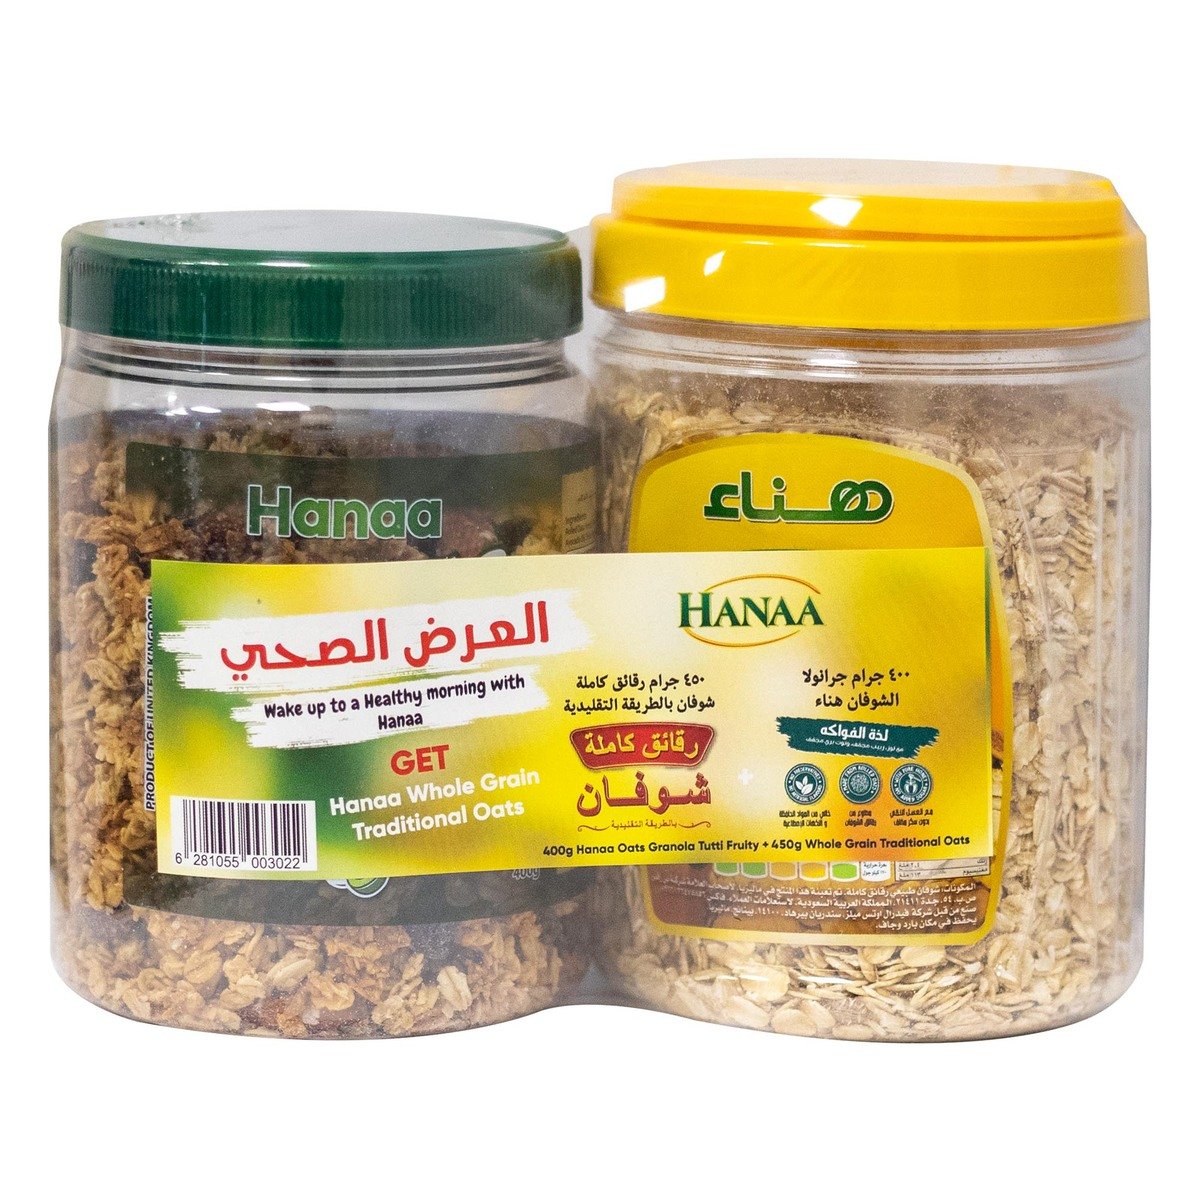 Buy Hanaa Granola Tutti Fruity Oats 400 g + Whole Grain Traditional Oats 450 g Online at Best Price | Muesli | Lulu KSA in Saudi Arabia